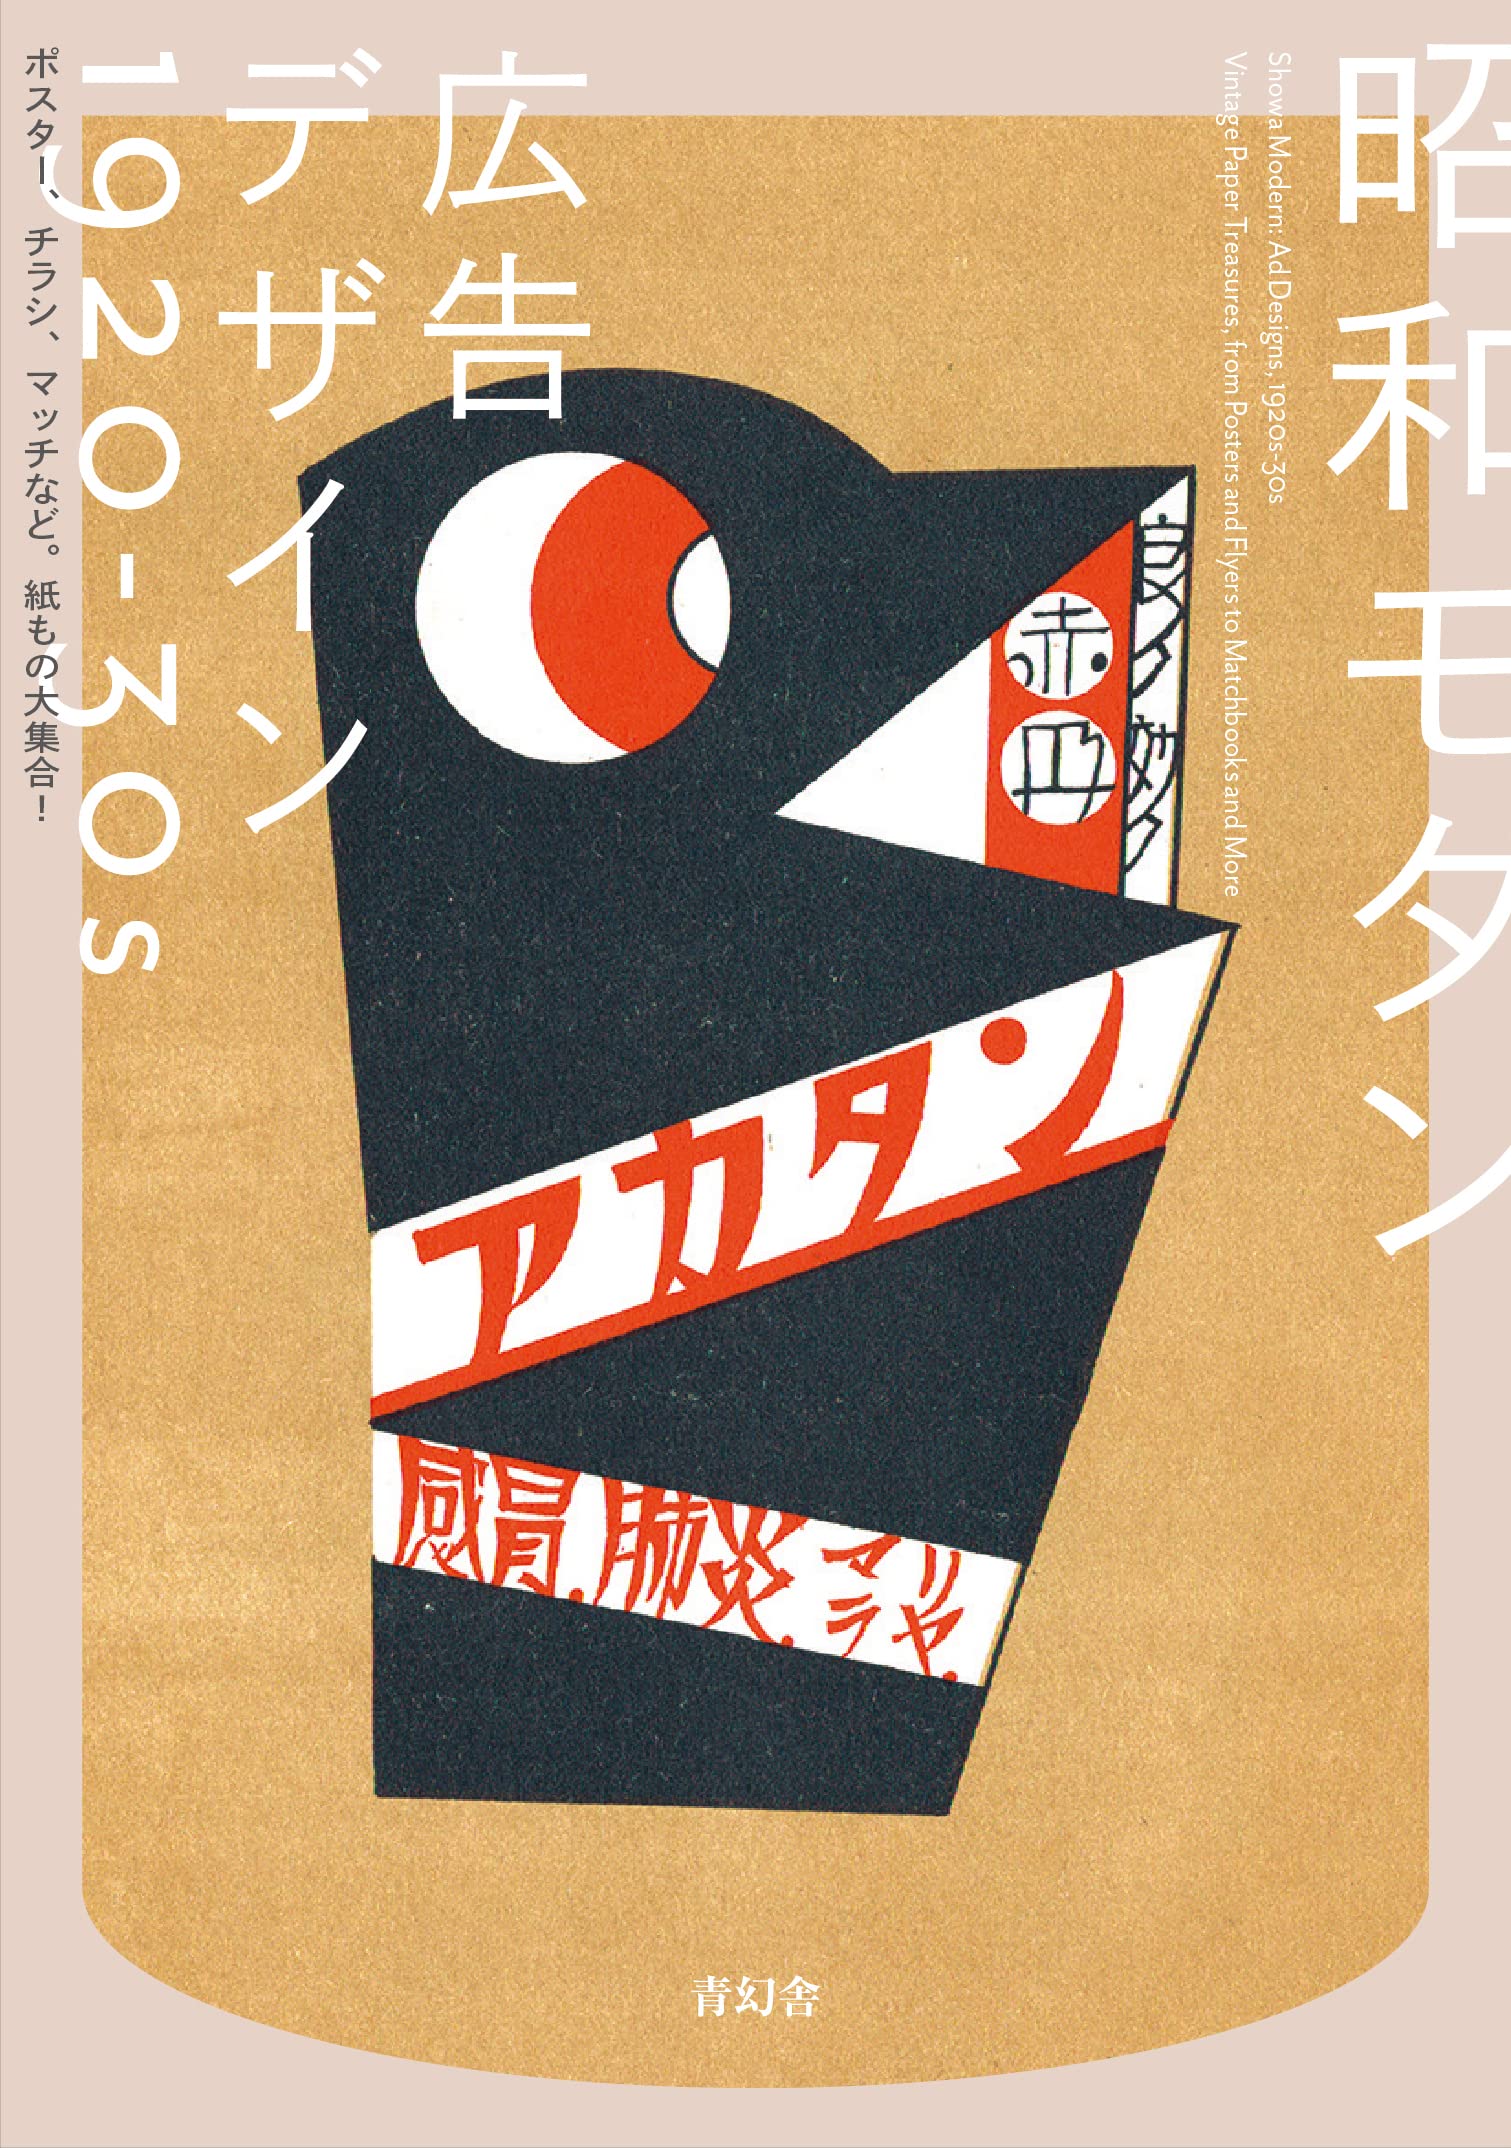 昭和モダン 広告デザイン1920-30s: ポスター、チラシ、マッチなど。紙 